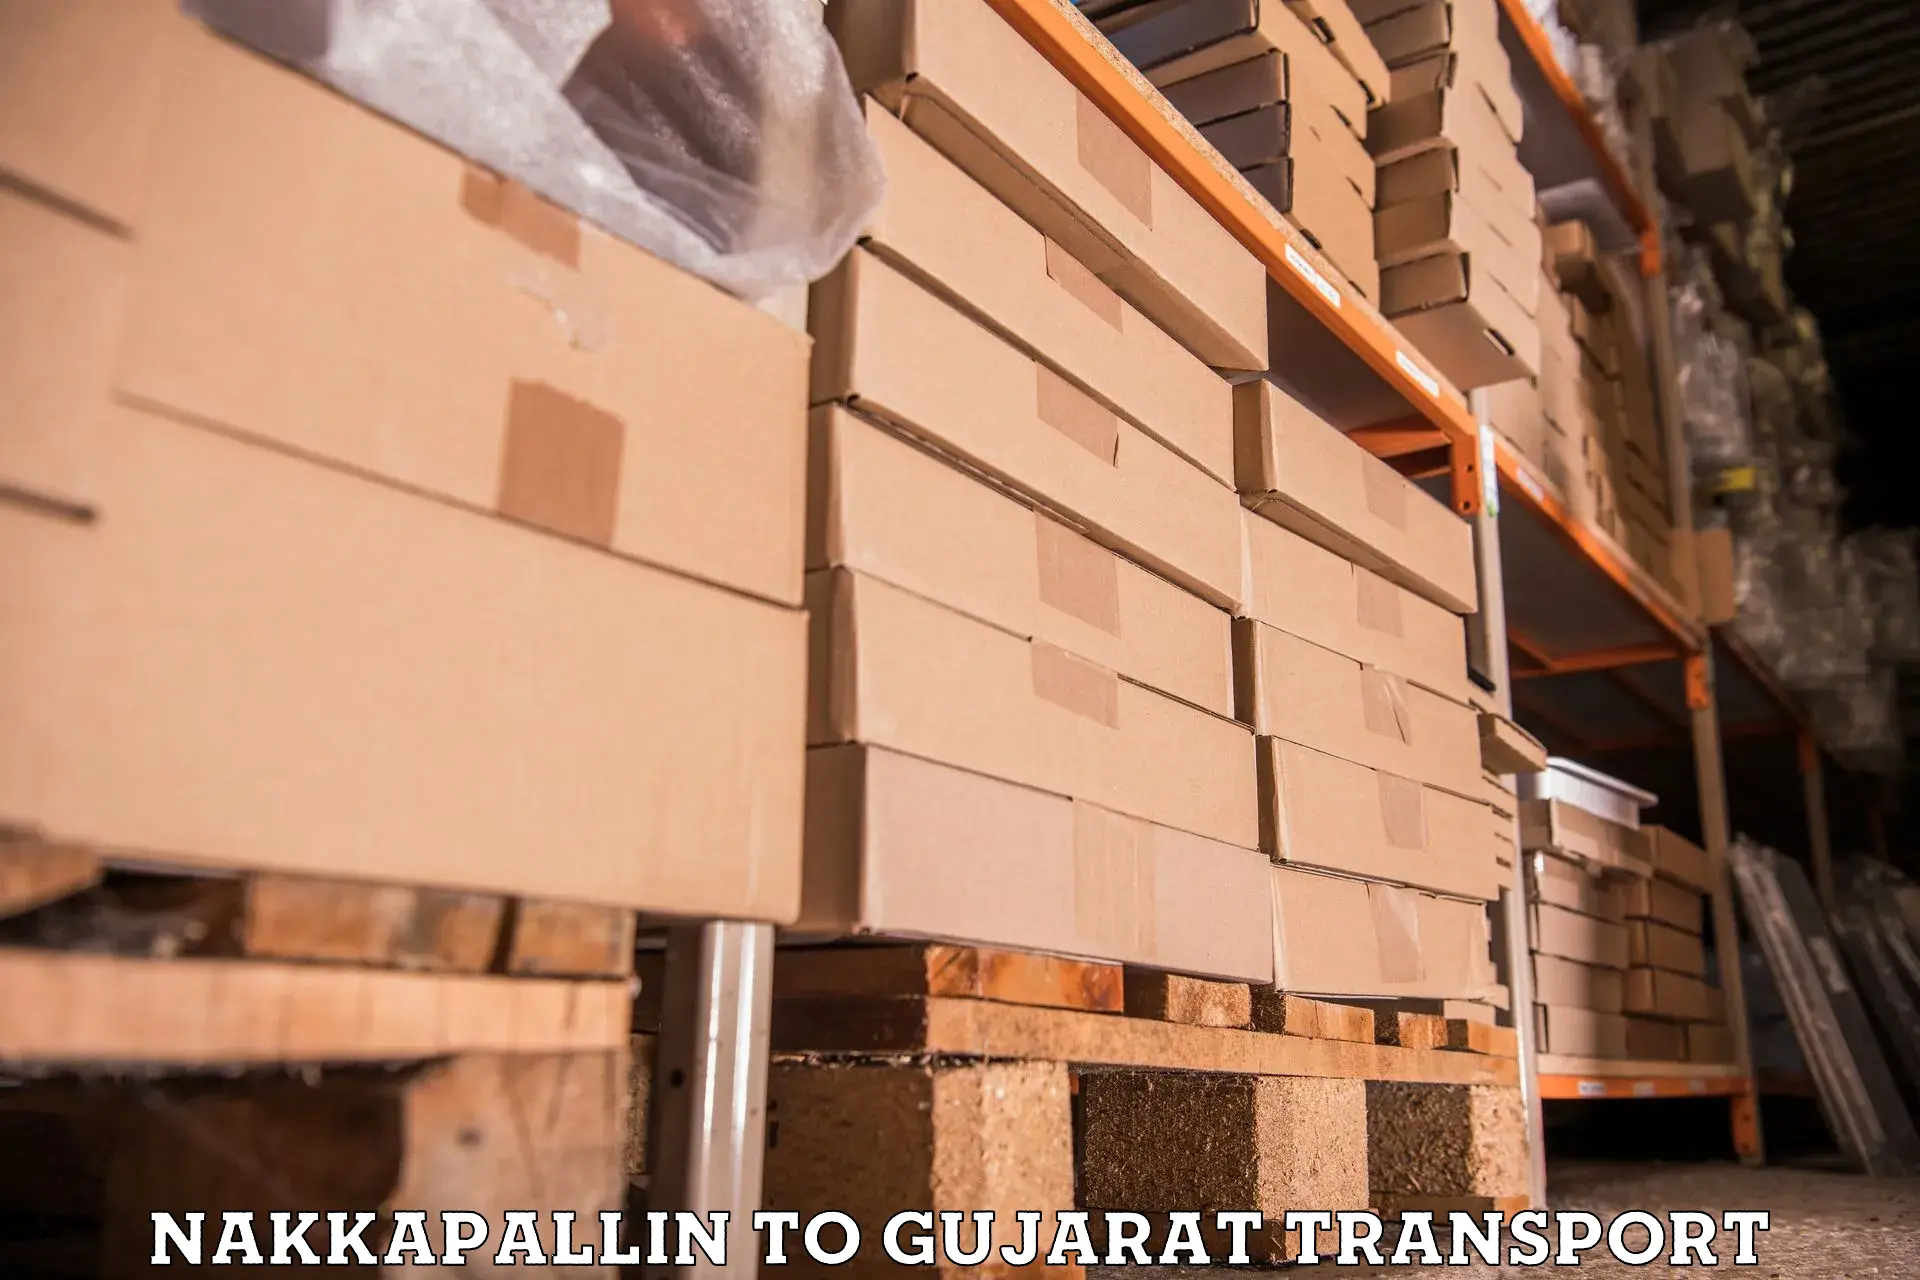 Parcel transport services Nakkapallin to IIIT Surat